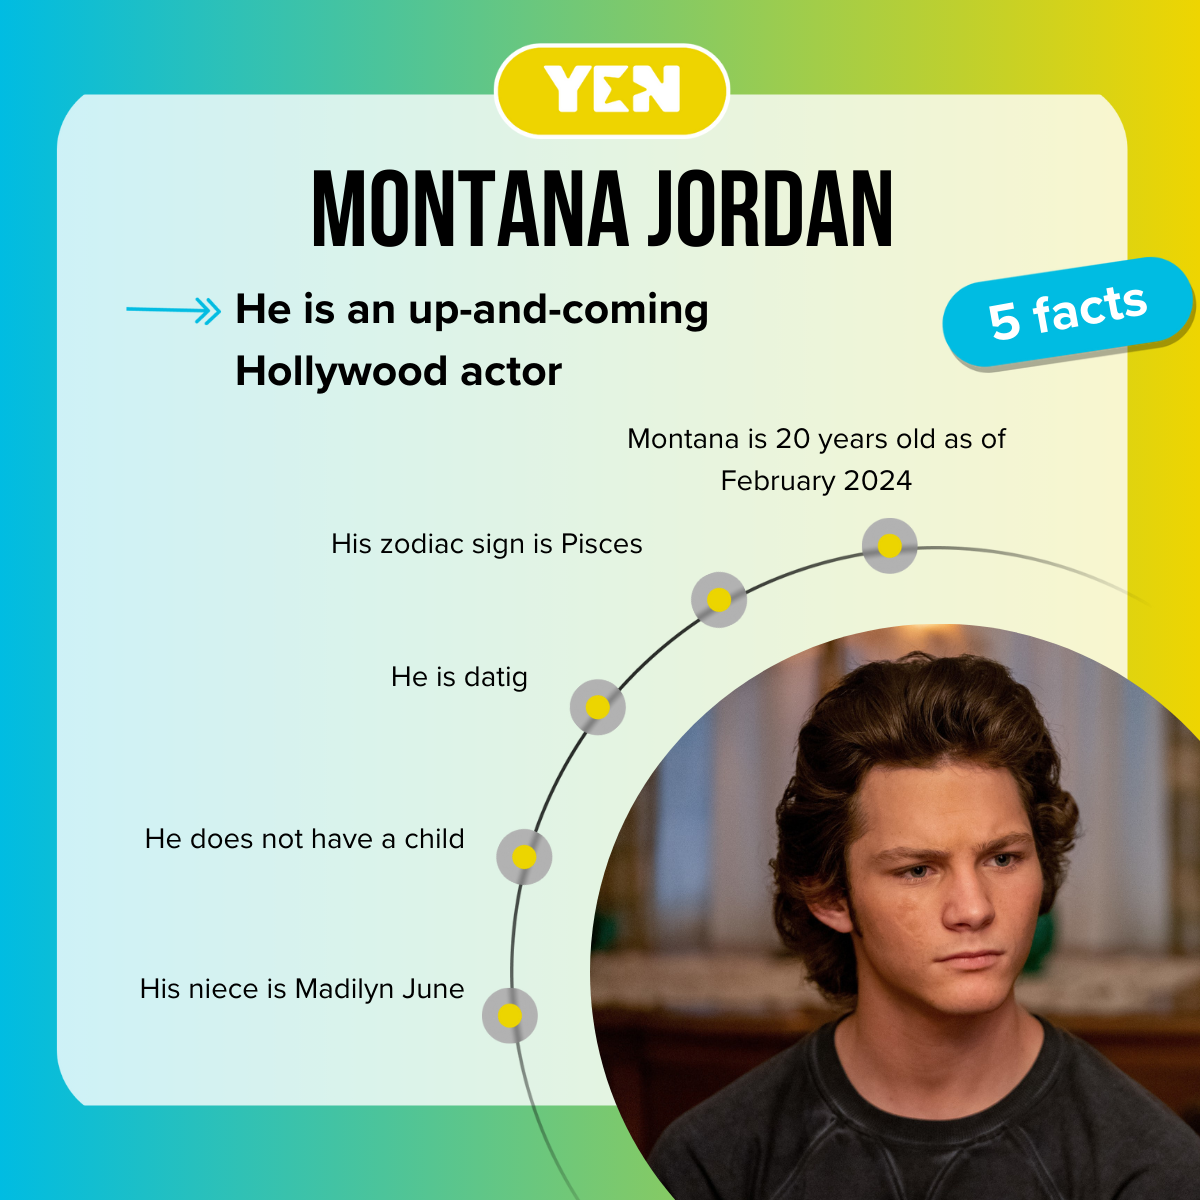 Facts about Montana Jordan